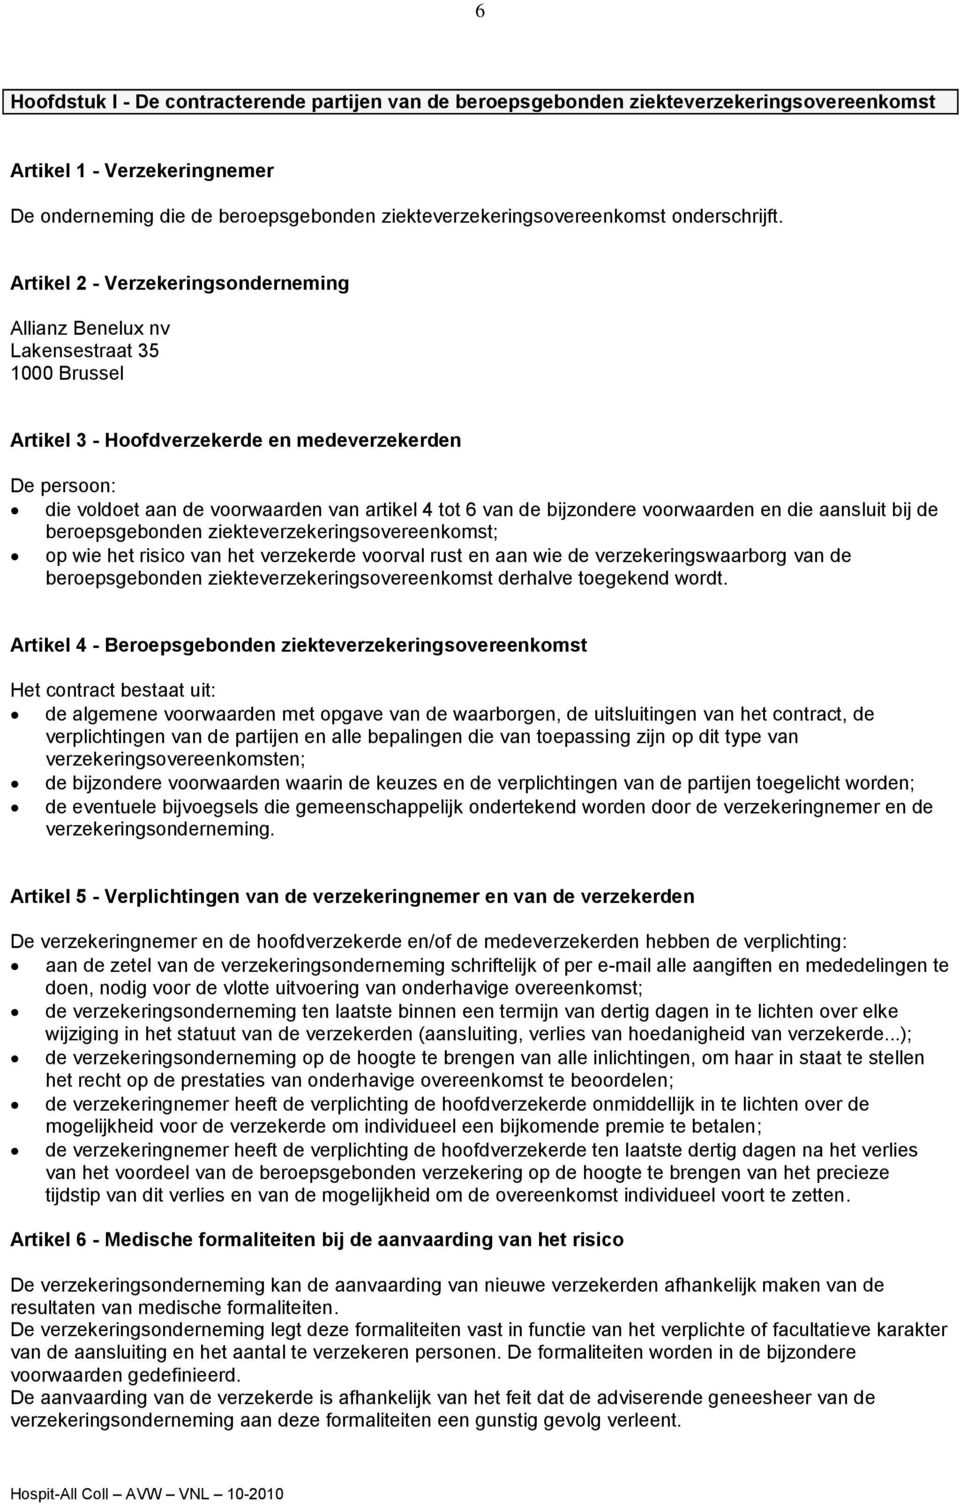 Artikel 2 - Verzekeringsonderneming Allianz Benelux nv Lakensestraat 35 1000 Brussel Artikel 3 - Hoofdverzekerde en medeverzekerden De persoon: die voldoet aan de voorwaarden van artikel 4 tot 6 van